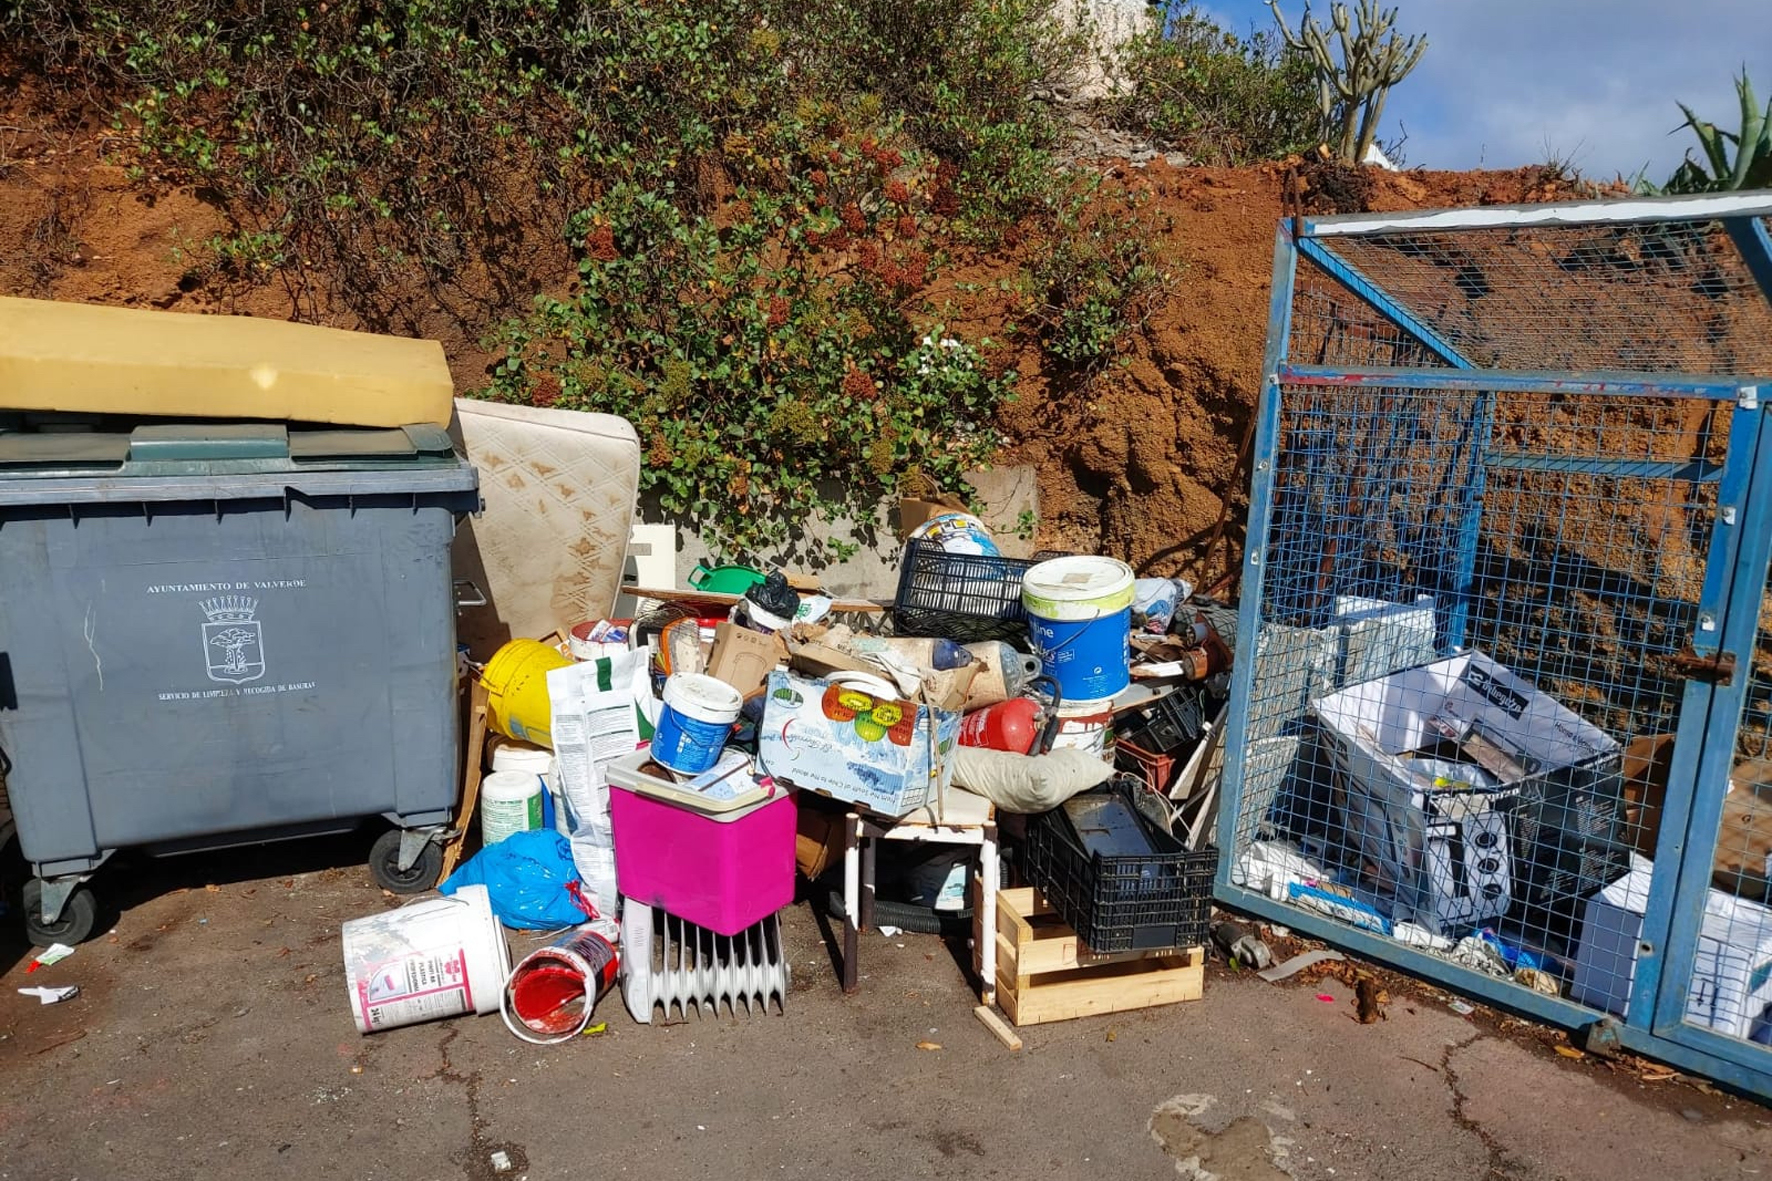 El Ayuntamiento de Valverde lamenta los vertidos no autorizados de residuos que se están produciendo en algunos puntos de recogida del municipio